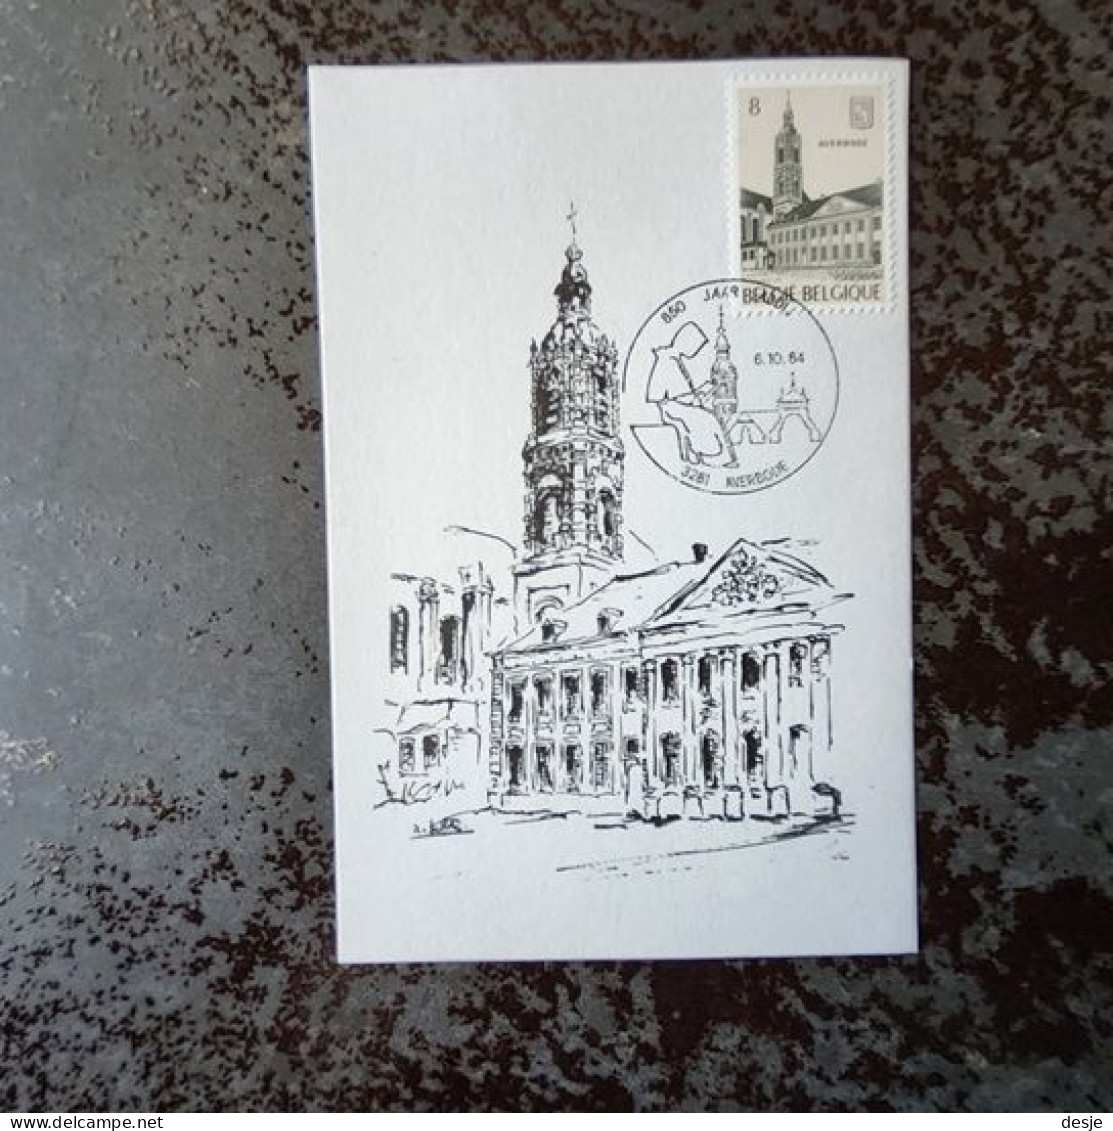 Abdij Van Averbode Door A. Gailliaerde Met 1ste Gestempelde Postzegel 1984 Bij Het 850 Jarig Bestaan Van De Abdij - Diest